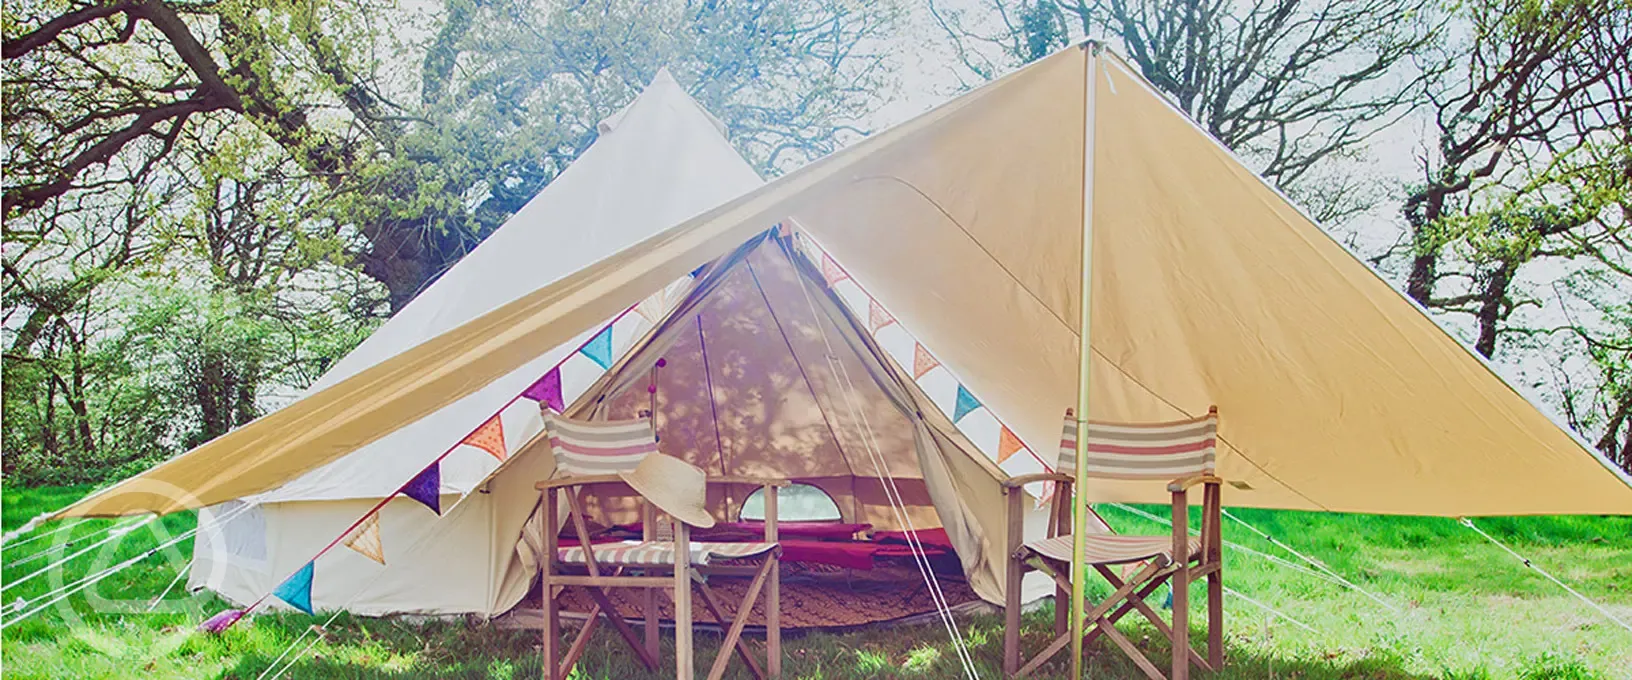 Tent camping at North Shire